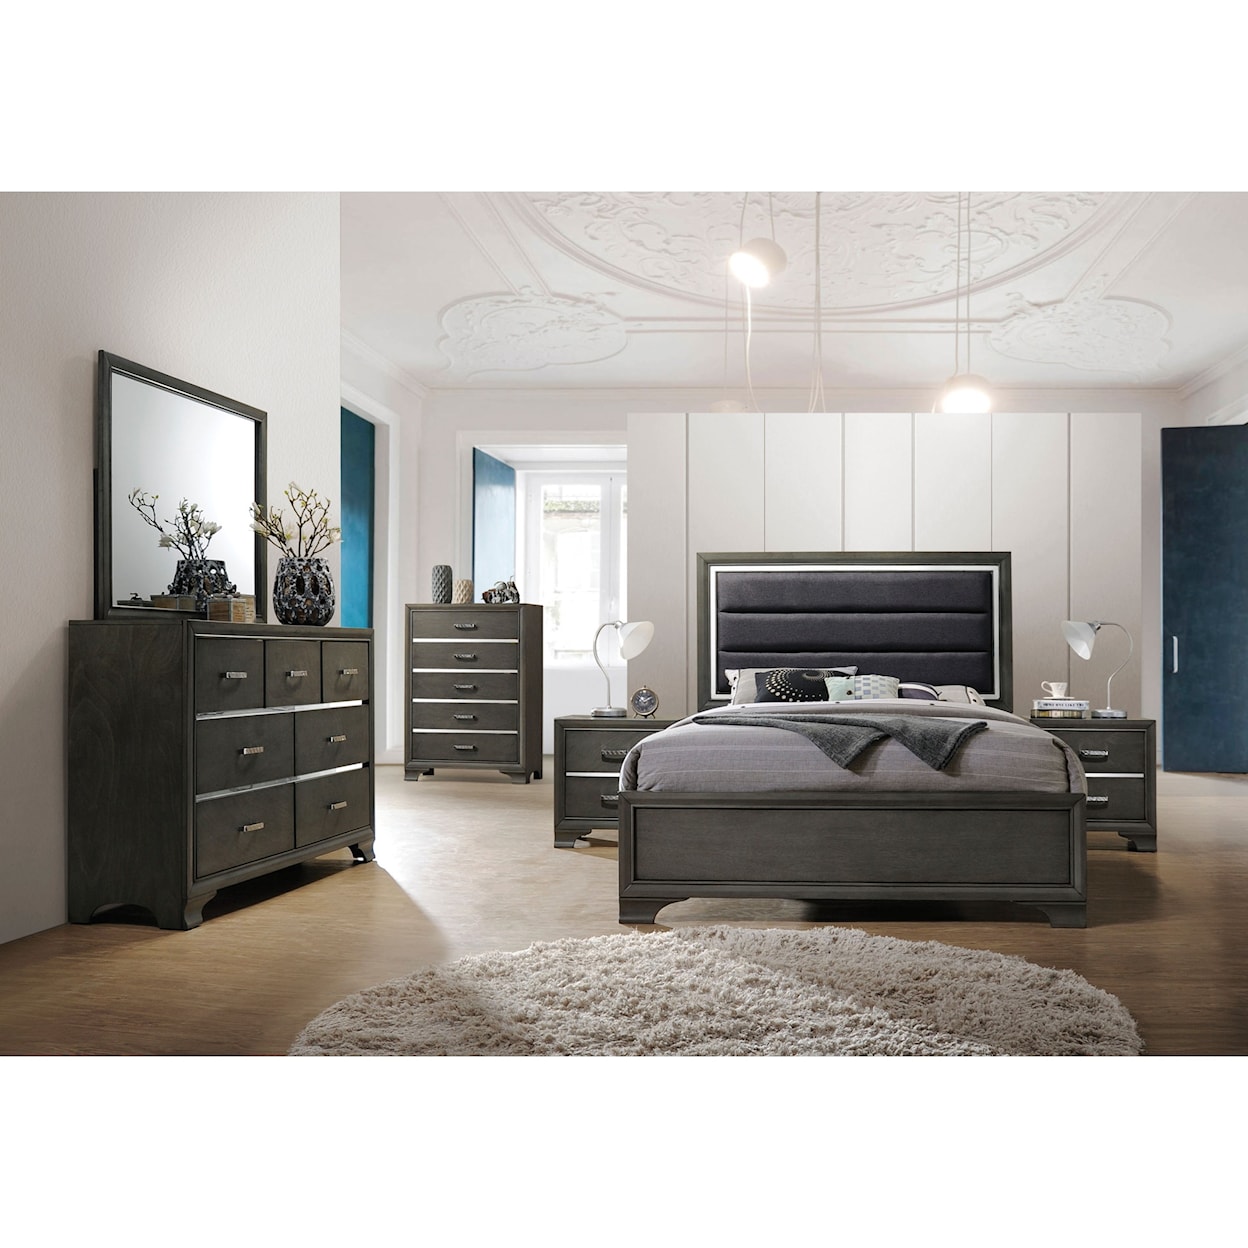 Acme Furniture Carine II Queen Bedroom Group